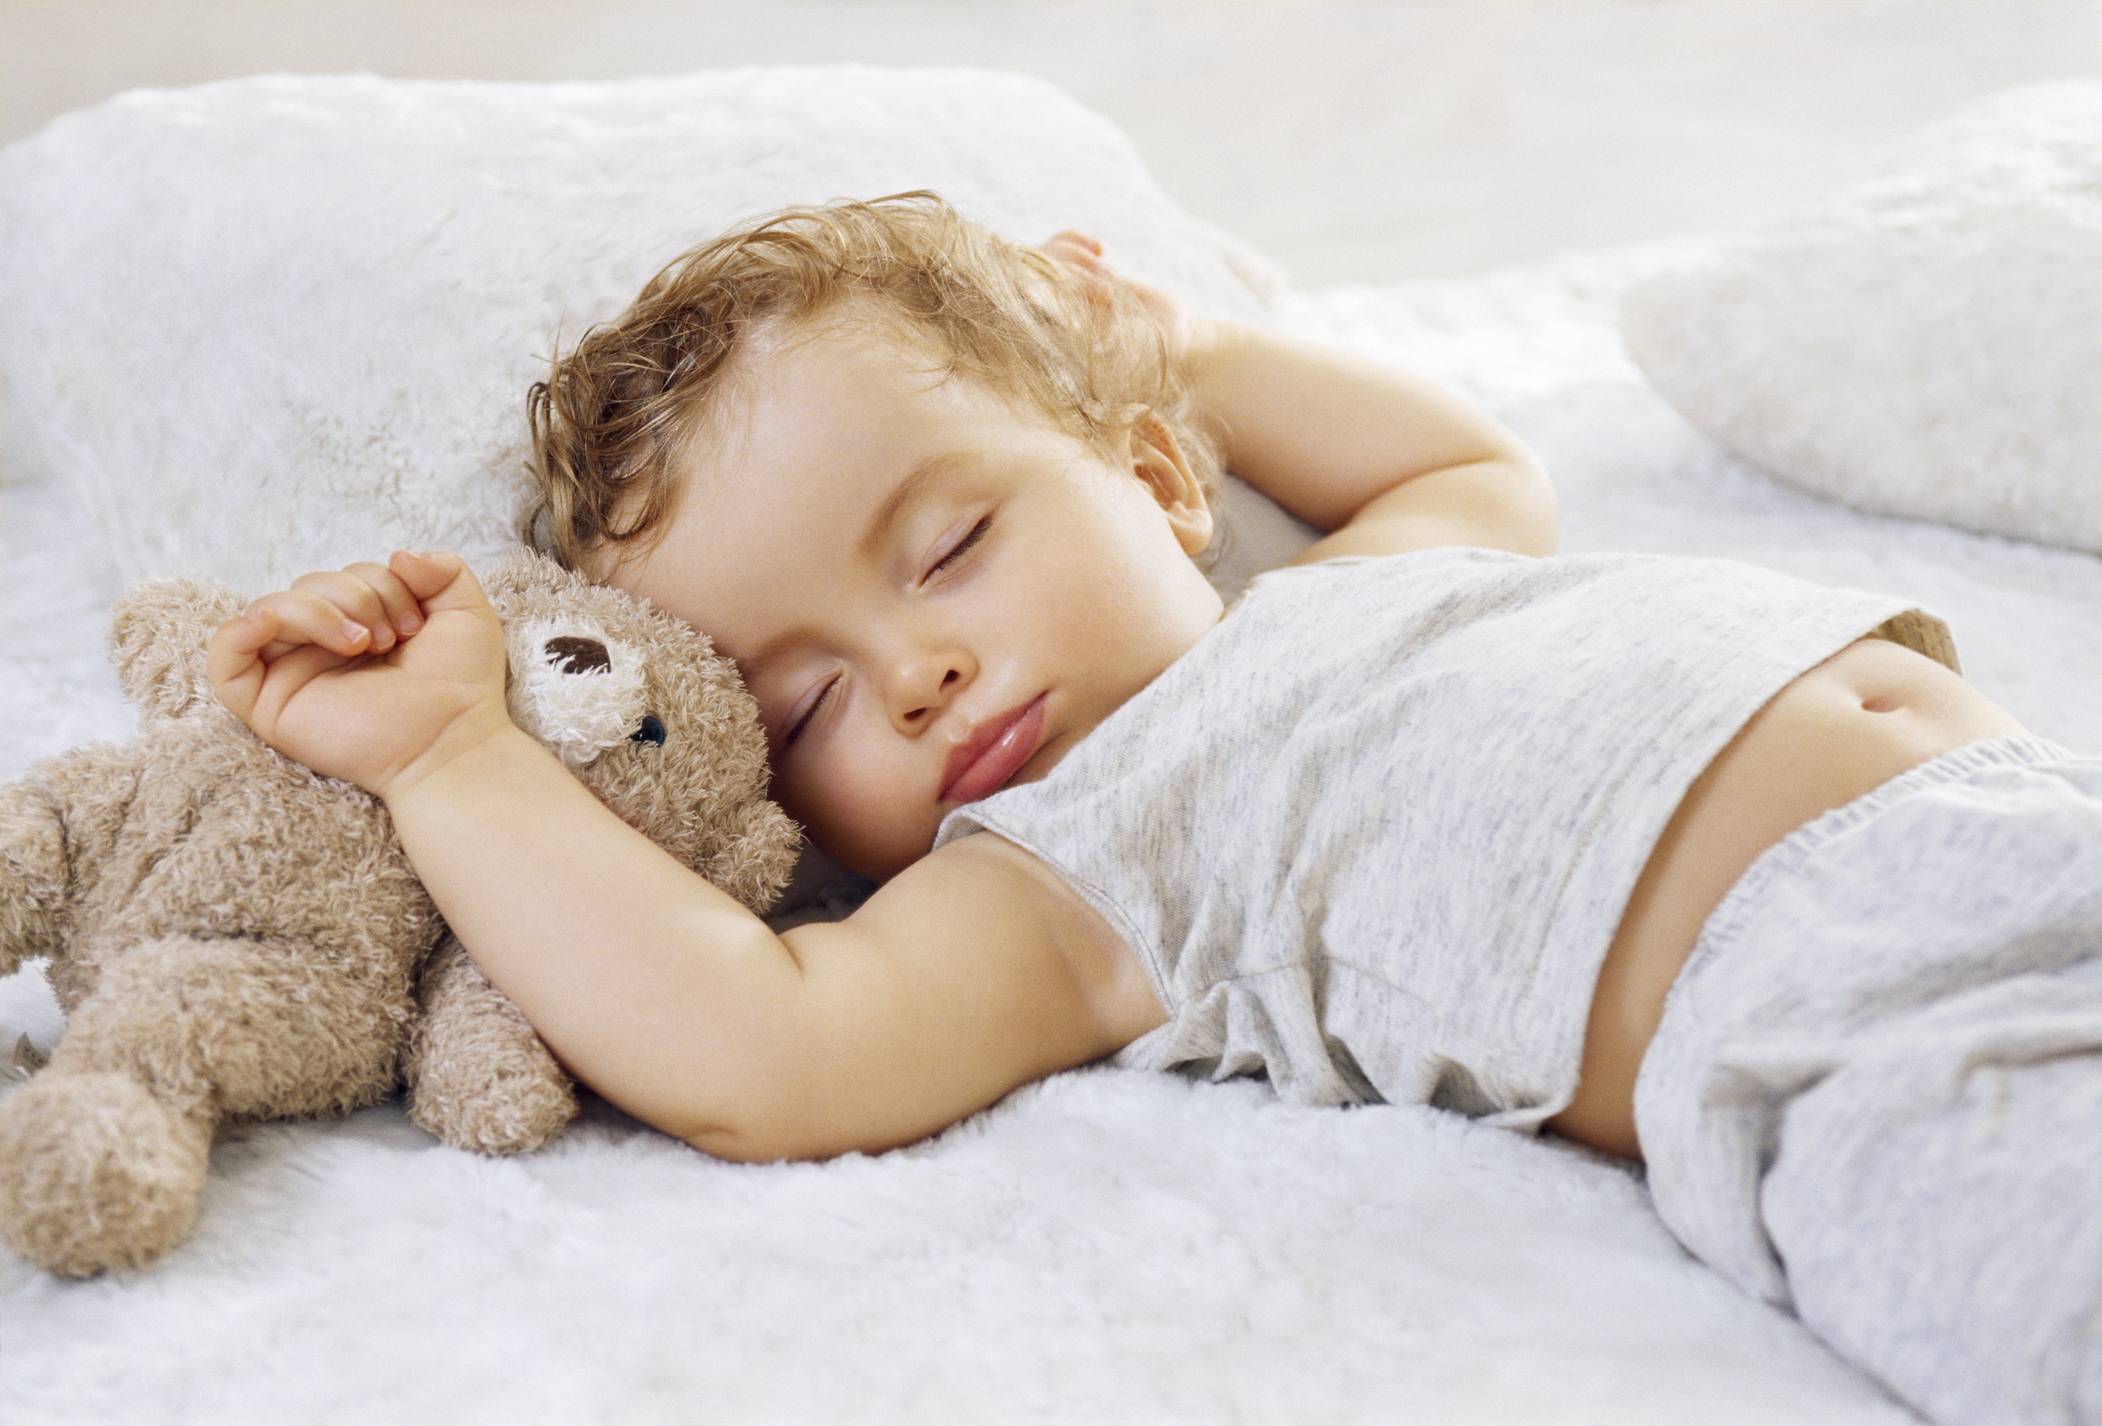 Ребенок 8 месяцев плохо спит ночью, часто просыпается и плачет